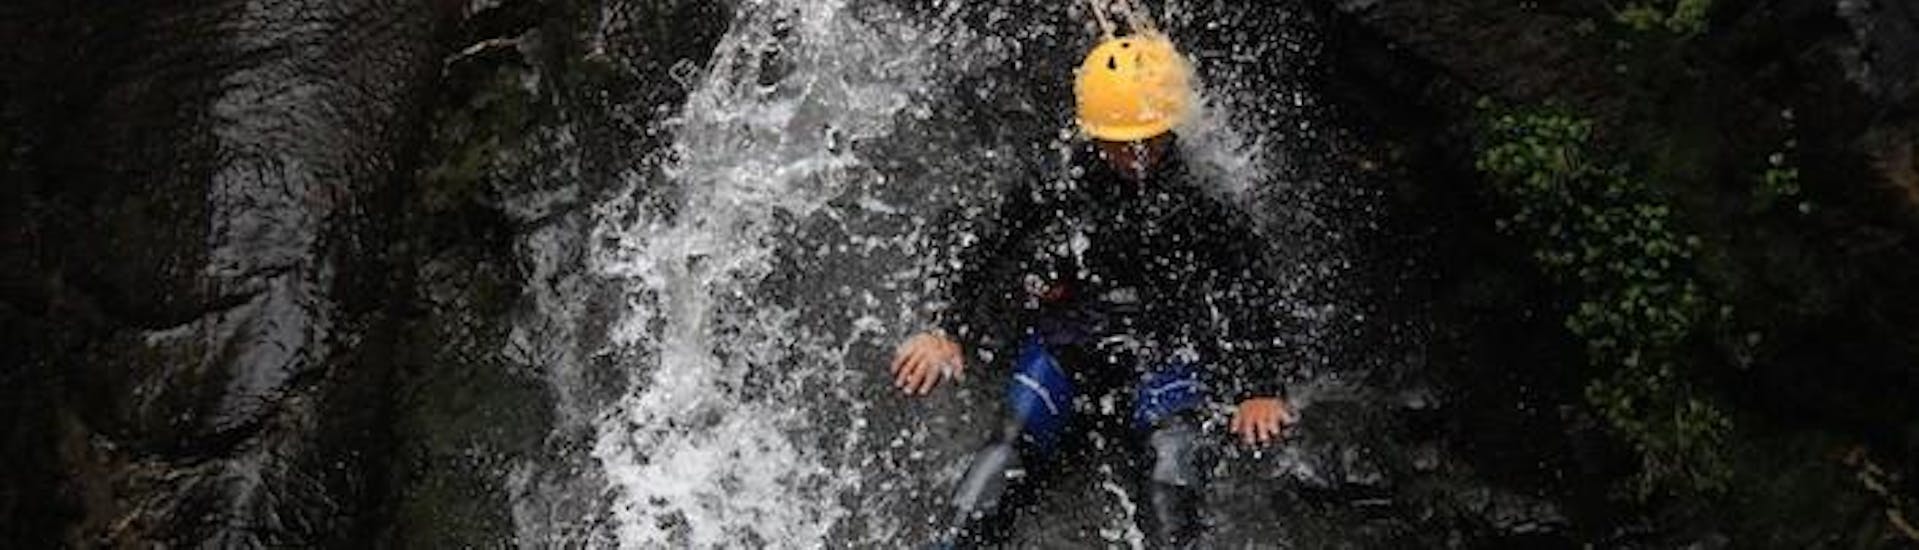 Een persoon staat op de rand van een rotsformatie terwijl het water op hem neervalt tijdens zijn canyoning tour met ROCROI.